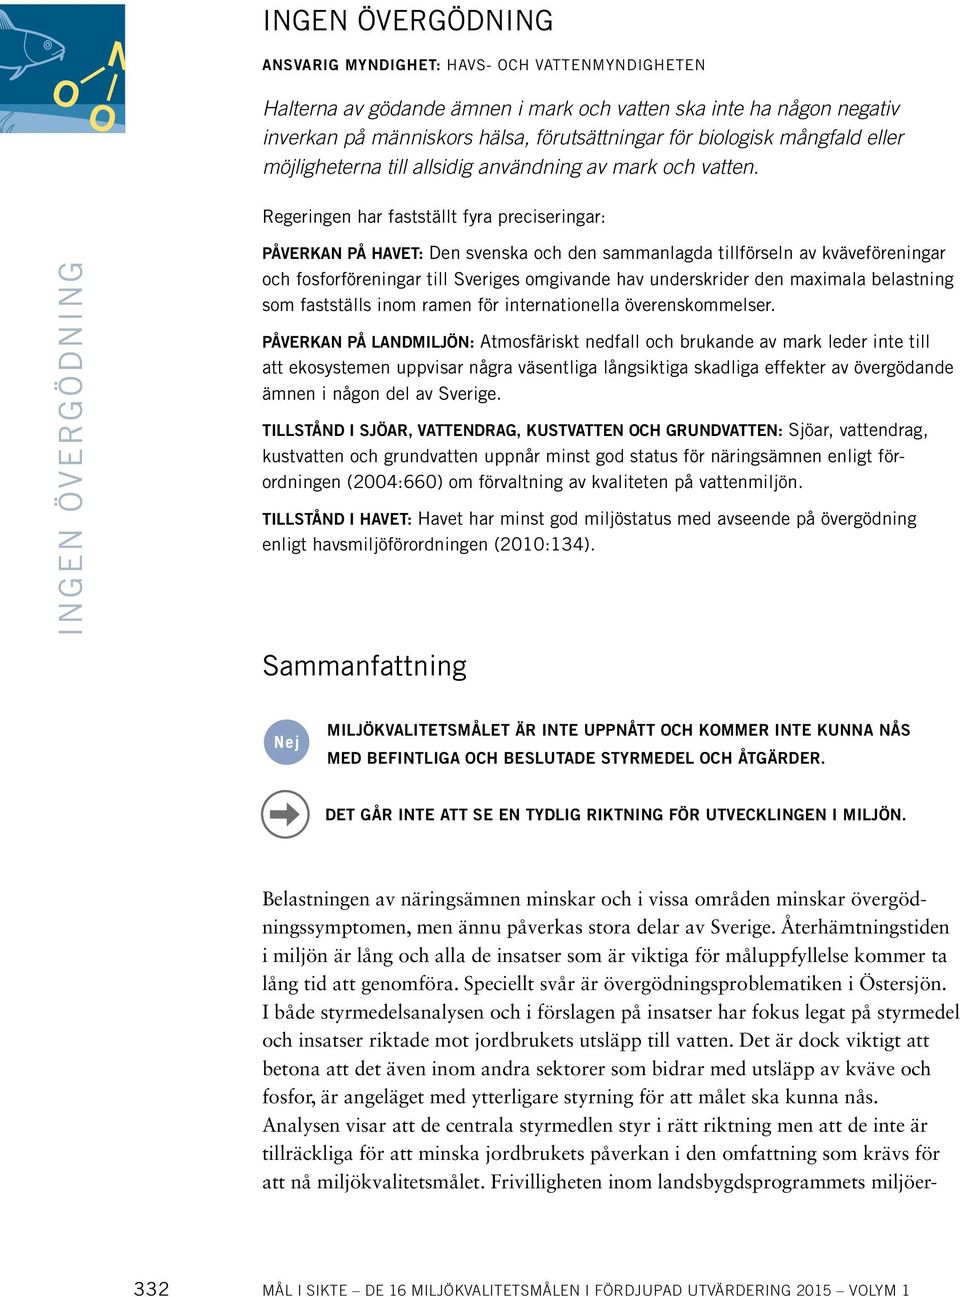 Regeringen har fastställt fyra preciseringar: INGEN ÖVERGÖDNING PÅVERKAN PÅ HAVET: Den svenska och den sammanlagda tillförseln av kväveföreningar och fosforföreningar till Sveriges omgivande hav